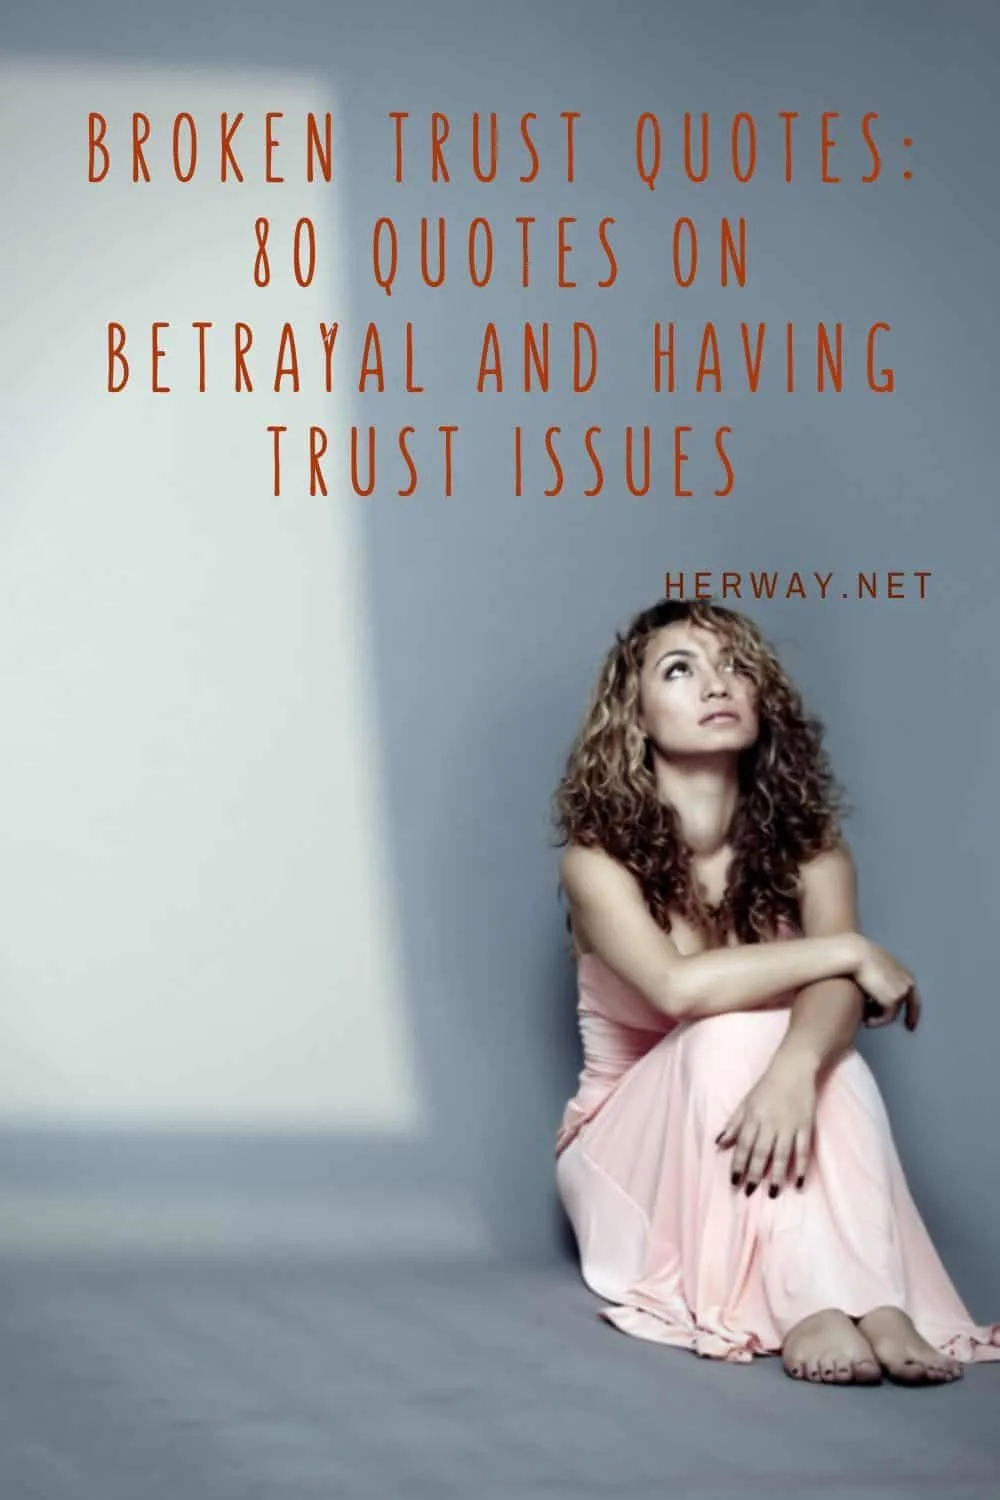 When trust has been broken in a relationship